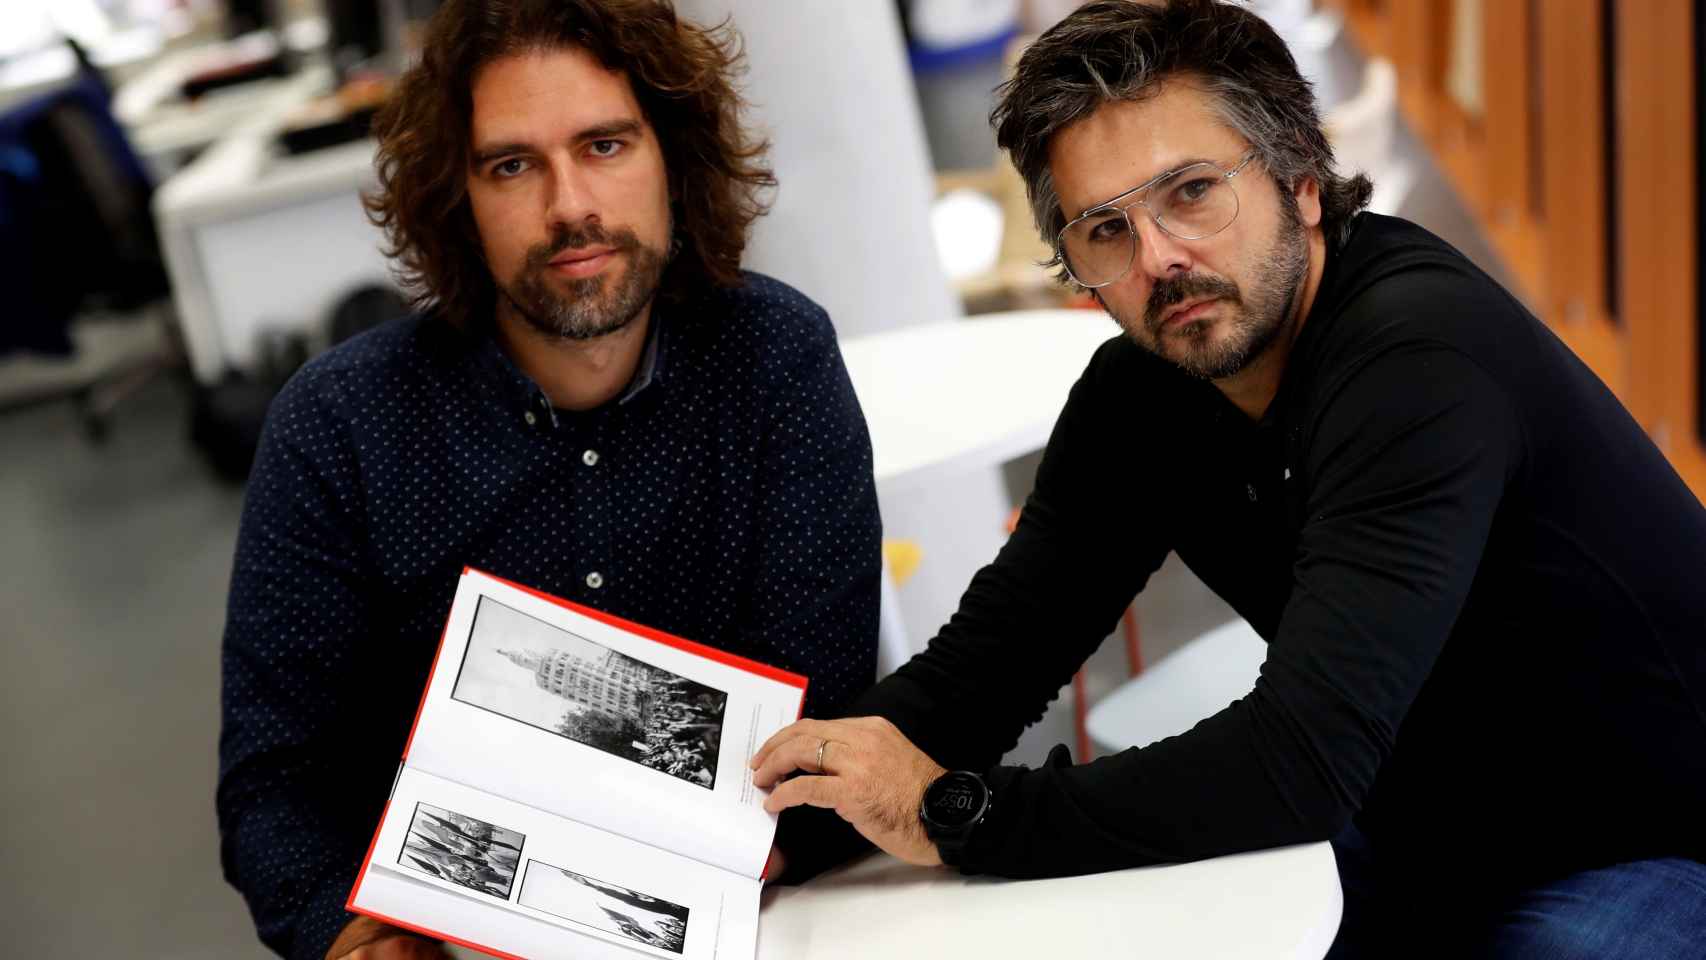 El historiador Arnau González y el fotógrafo David Ramos son los editores del libro de fotos de Campañà.